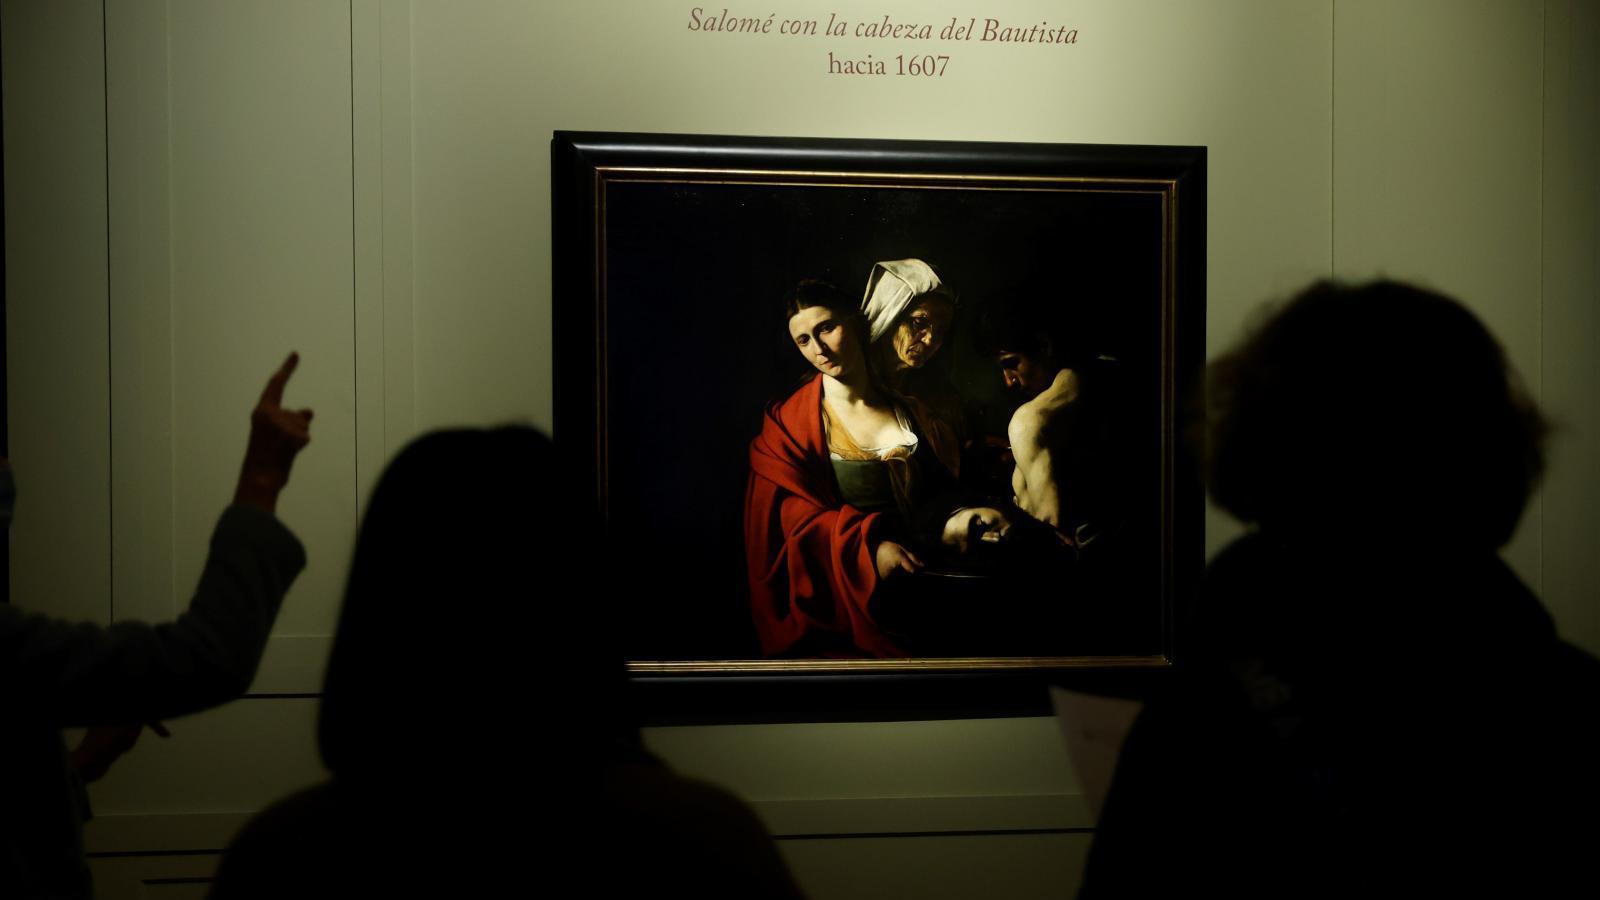 "Salomé con la cabeza del Bautista", de Caravaggio, en el Palacio Real